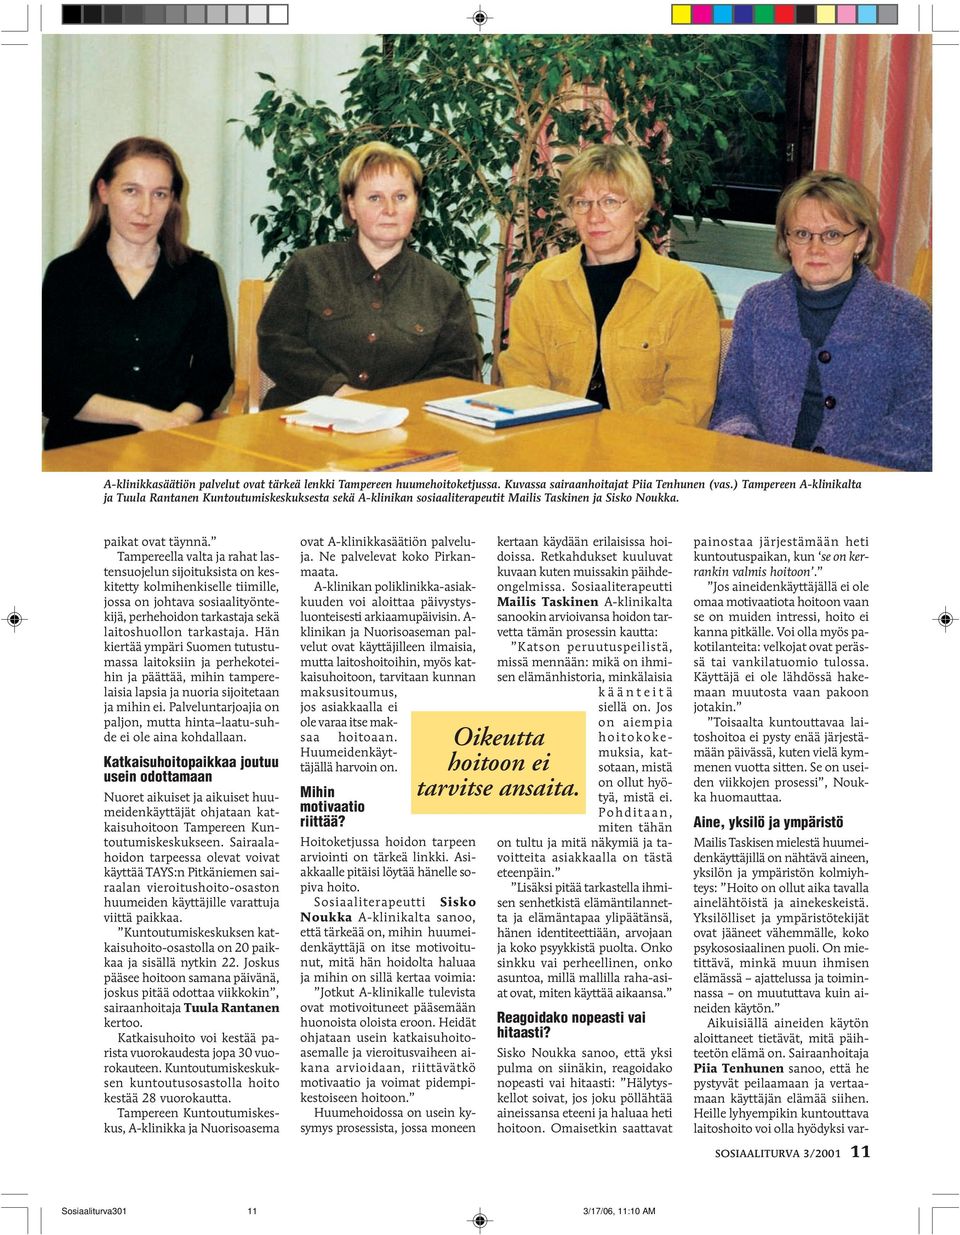 Tampereella valta ja rahat lastensuojelun sijoituksista on keskitetty kolmihenkiselle tiimille, jossa on johtava sosiaalityöntekijä, perhehoidon tarkastaja sekä laitoshuollon tarkastaja.